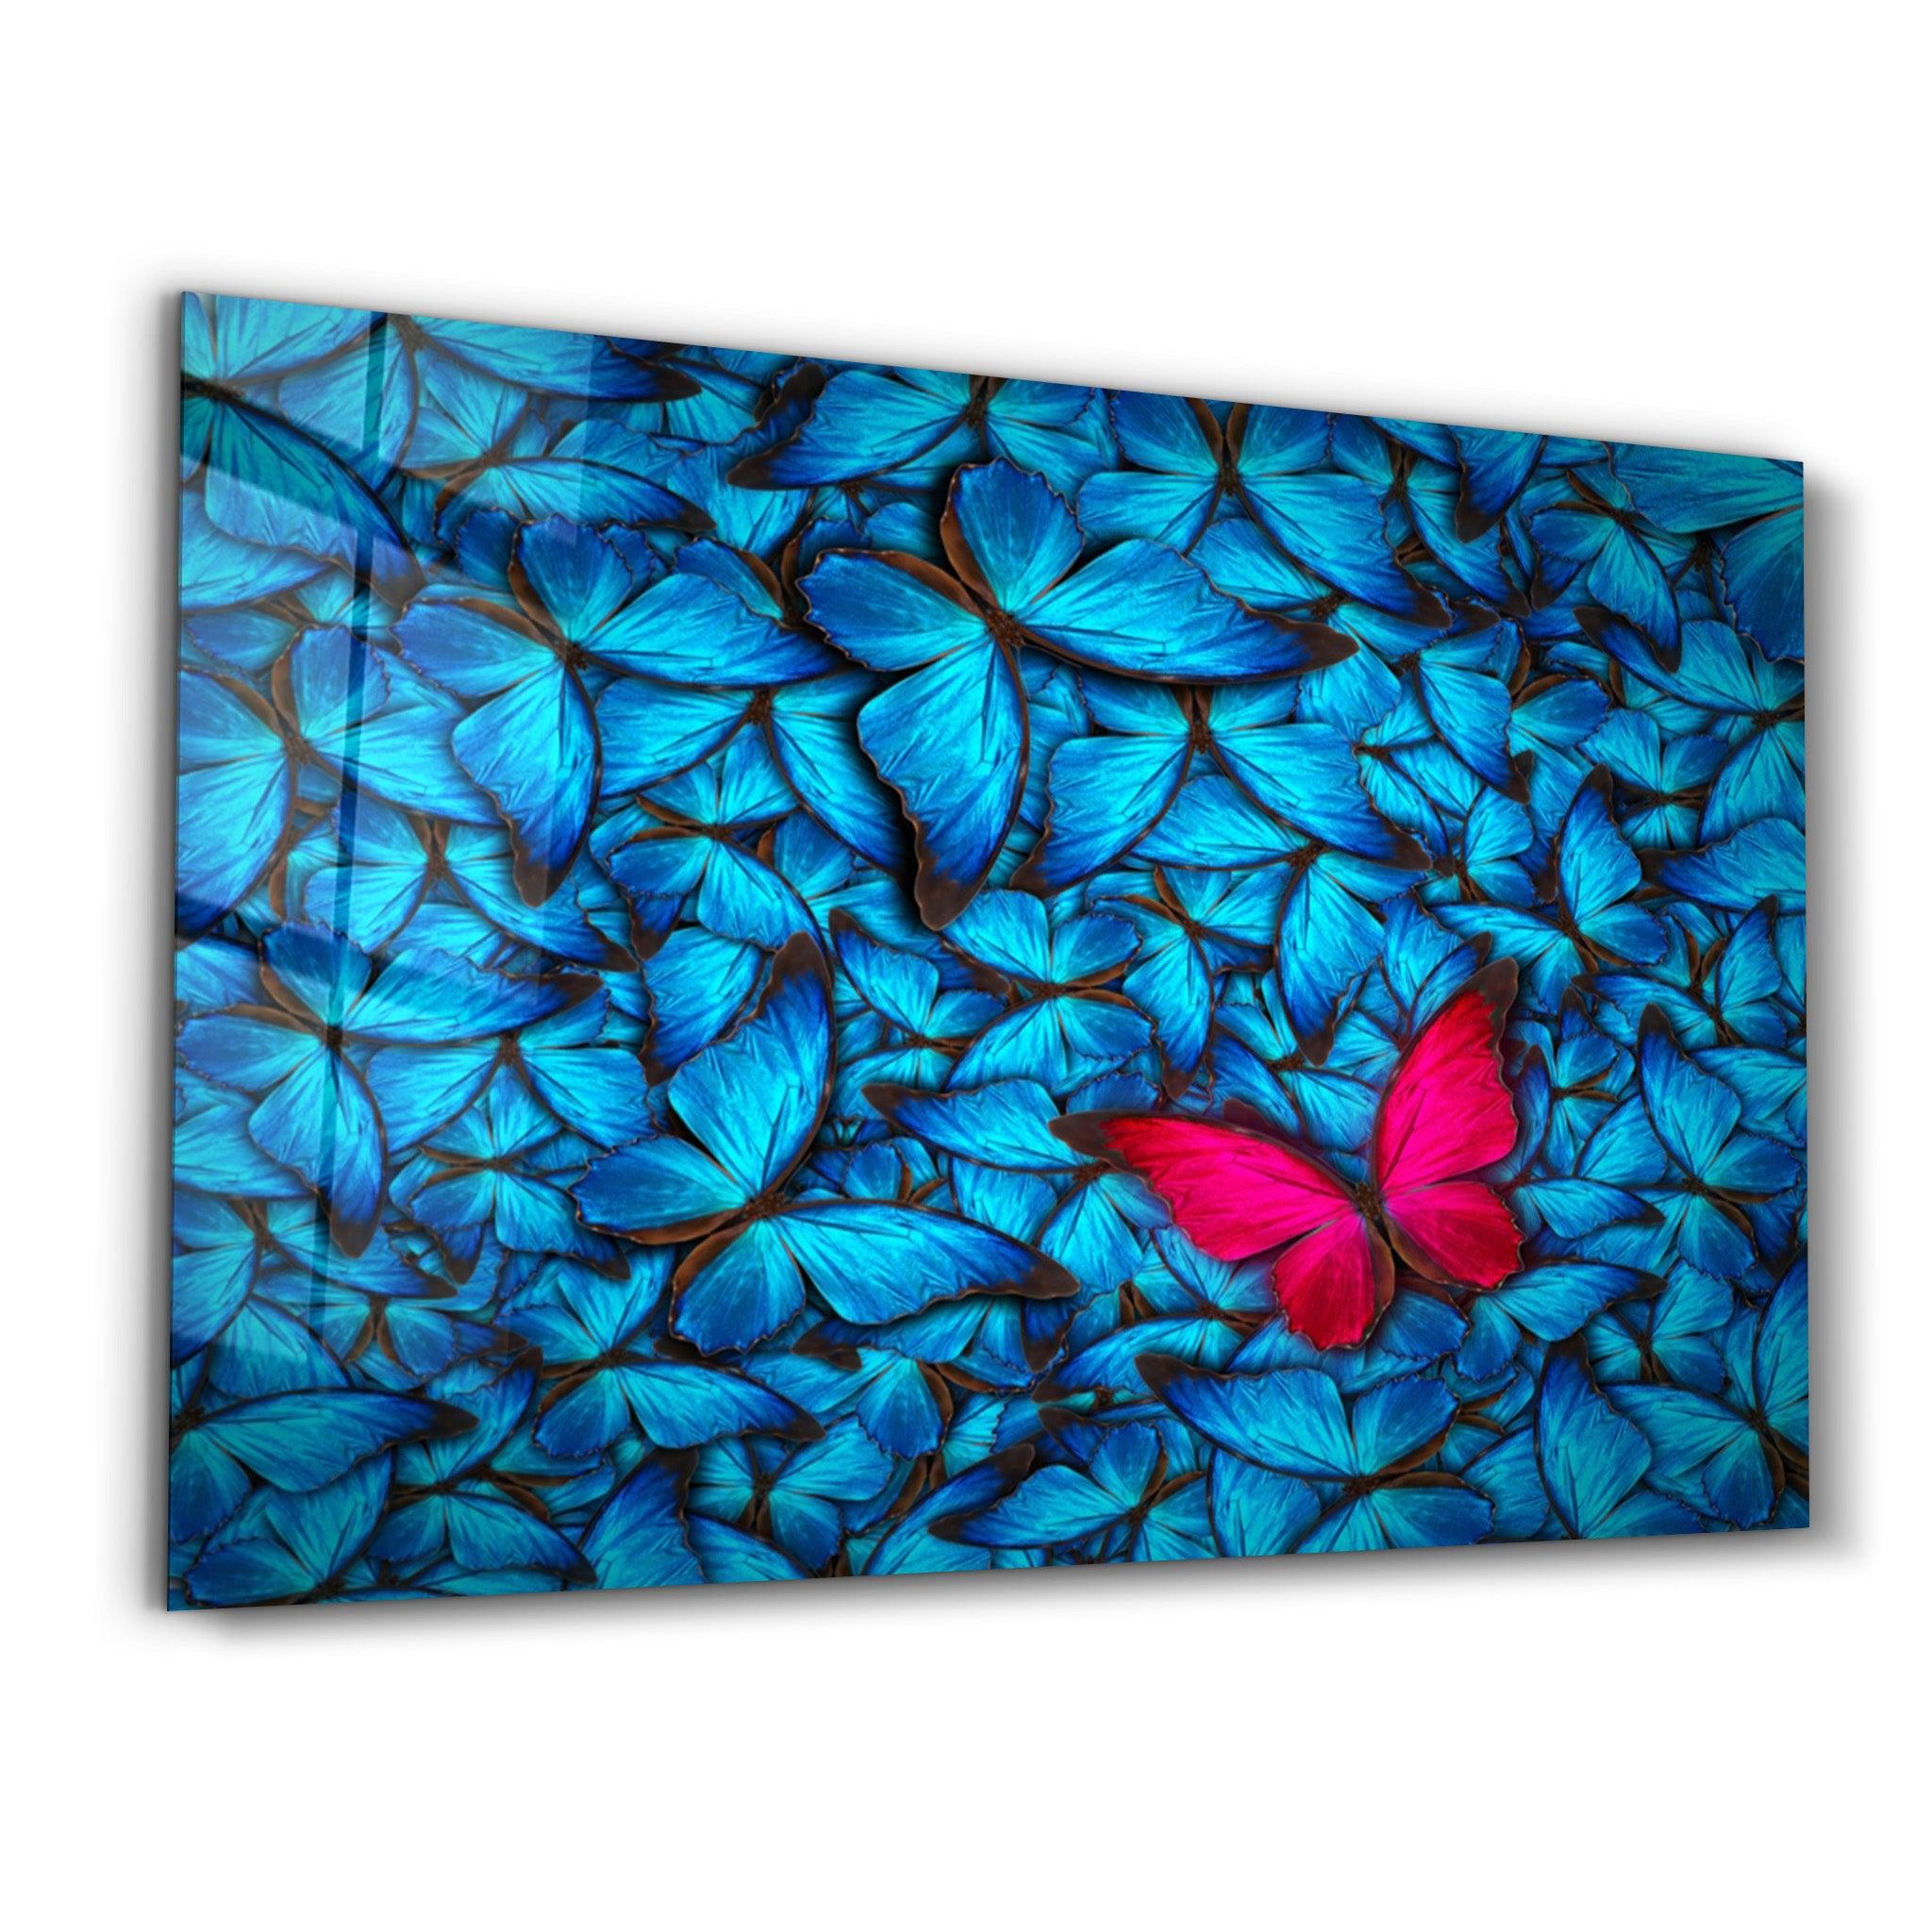 Butterfly 1 | Glass Wall Art - ArtDesigna Glass Printing Wall Art